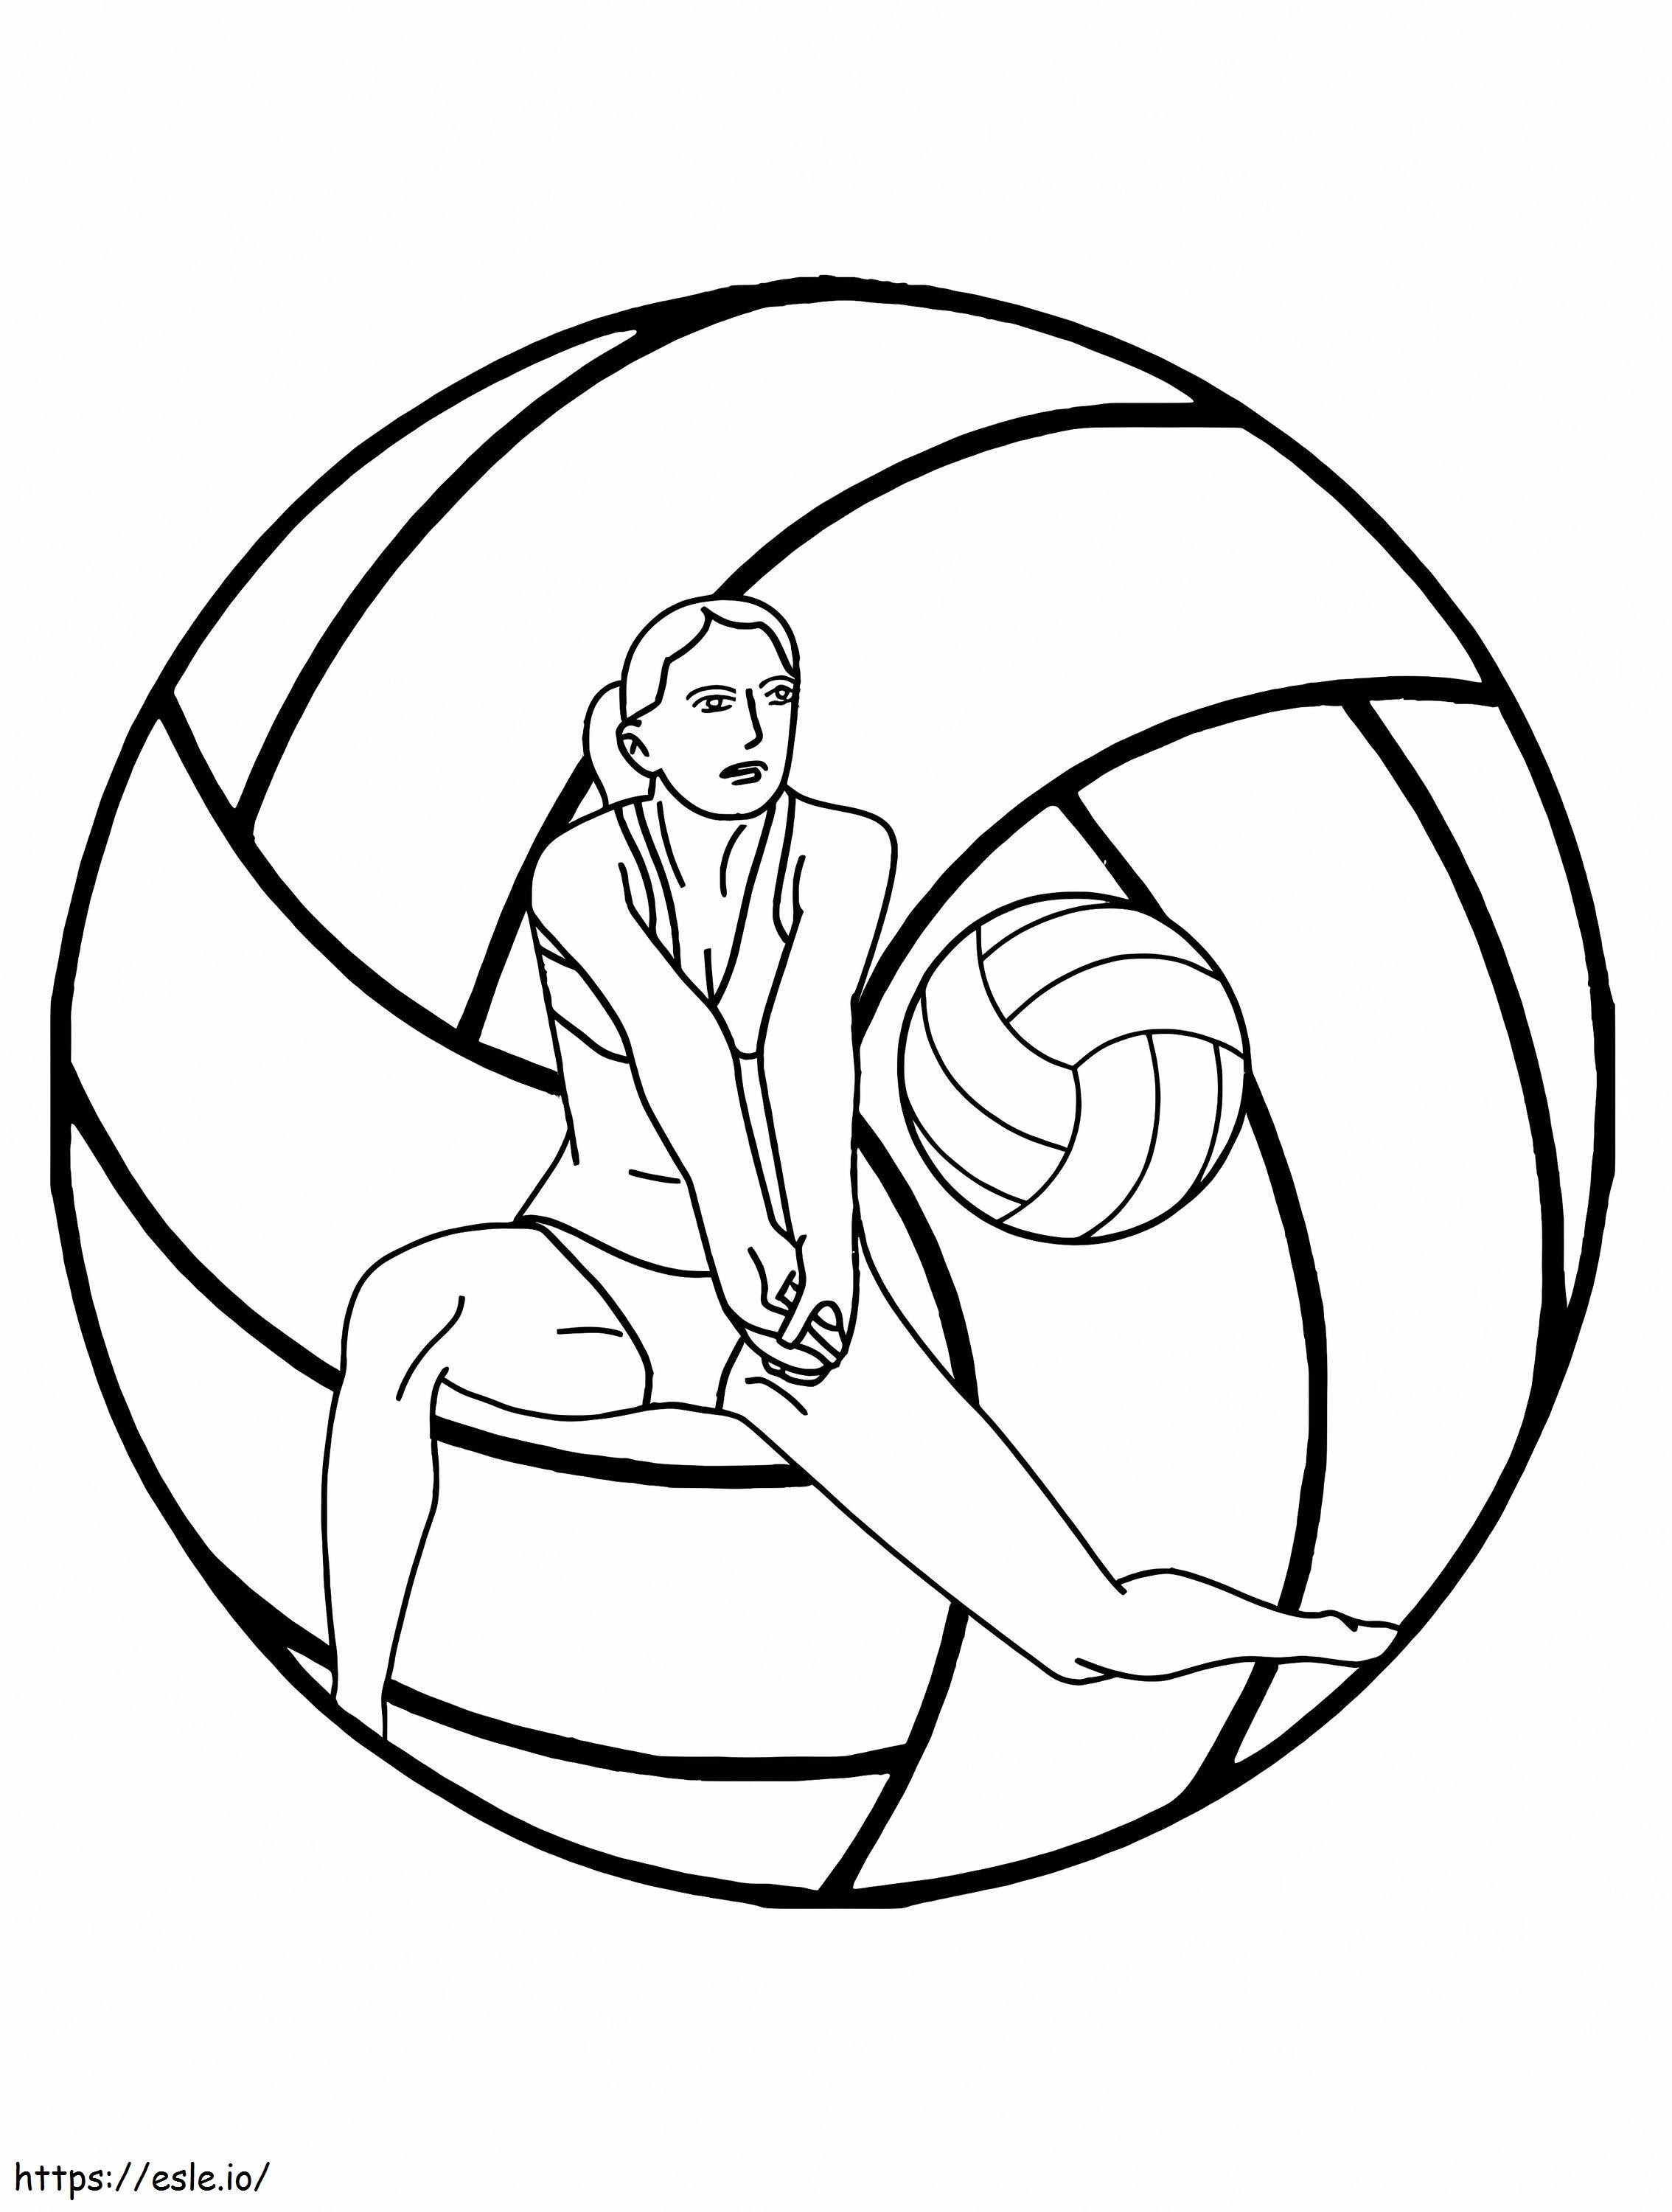 Logo turnieju siatkówki kolorowanka